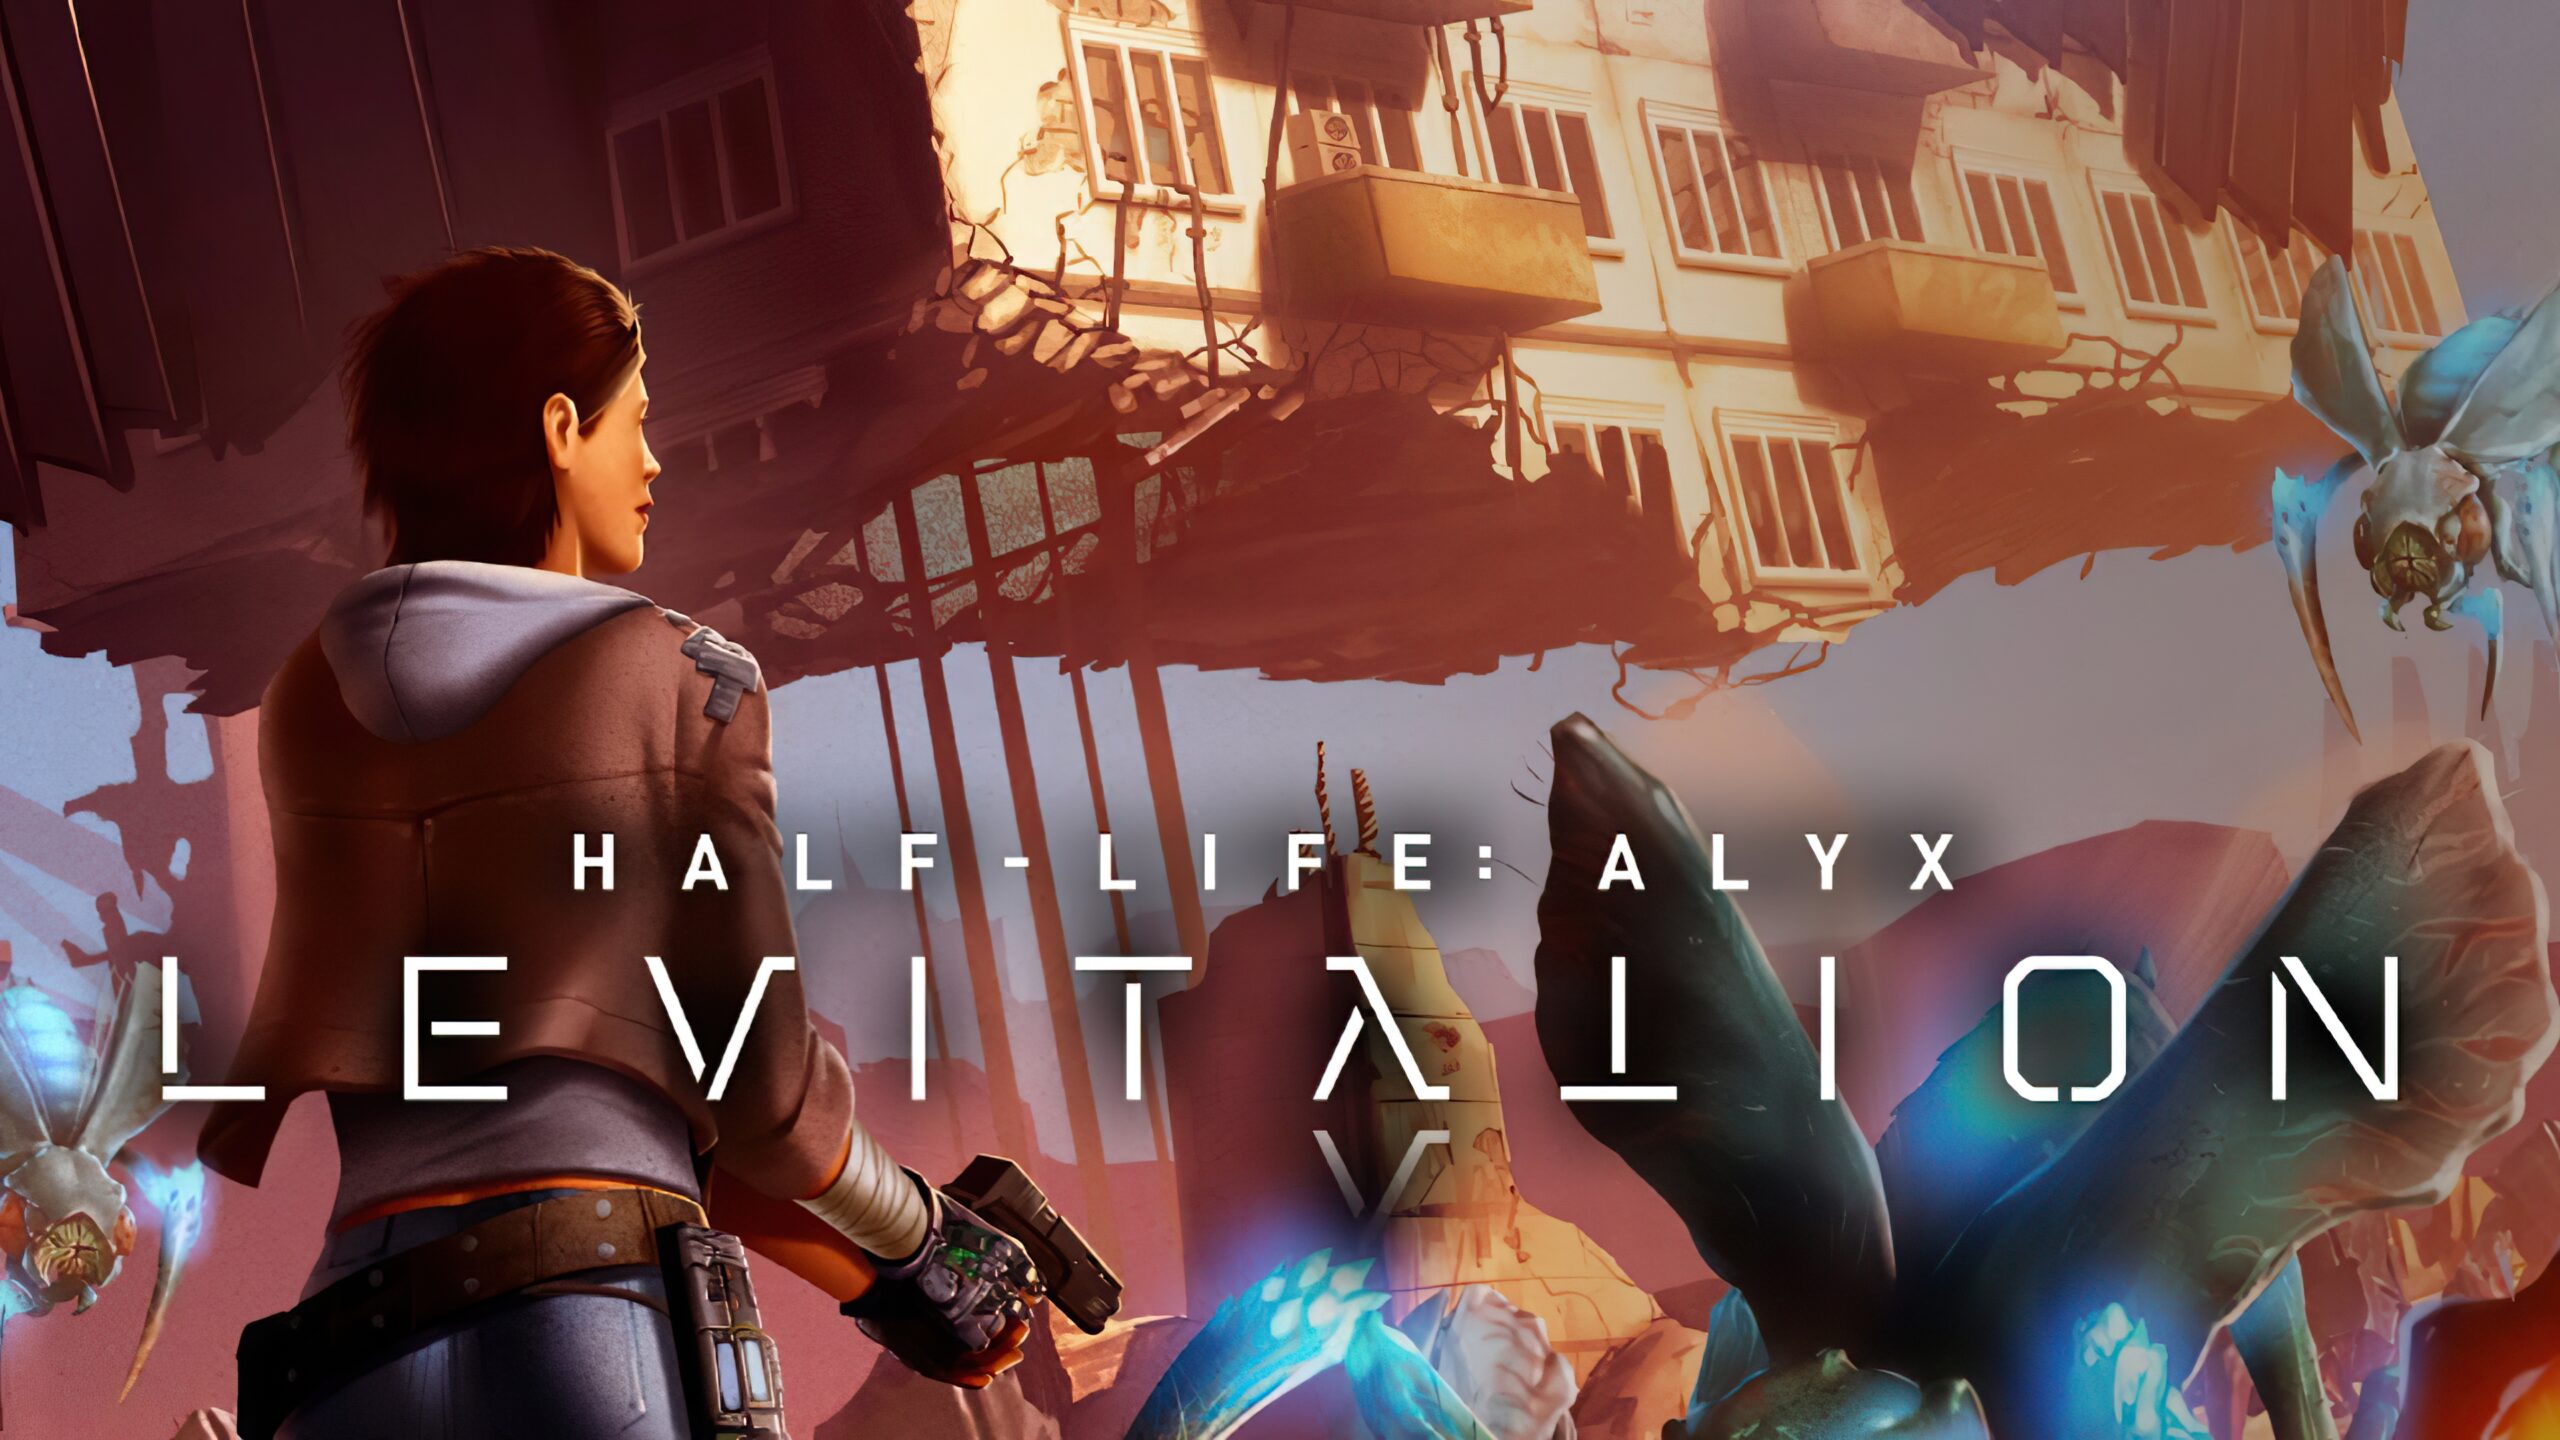 Alyx Vance/en - Valve Developer Community